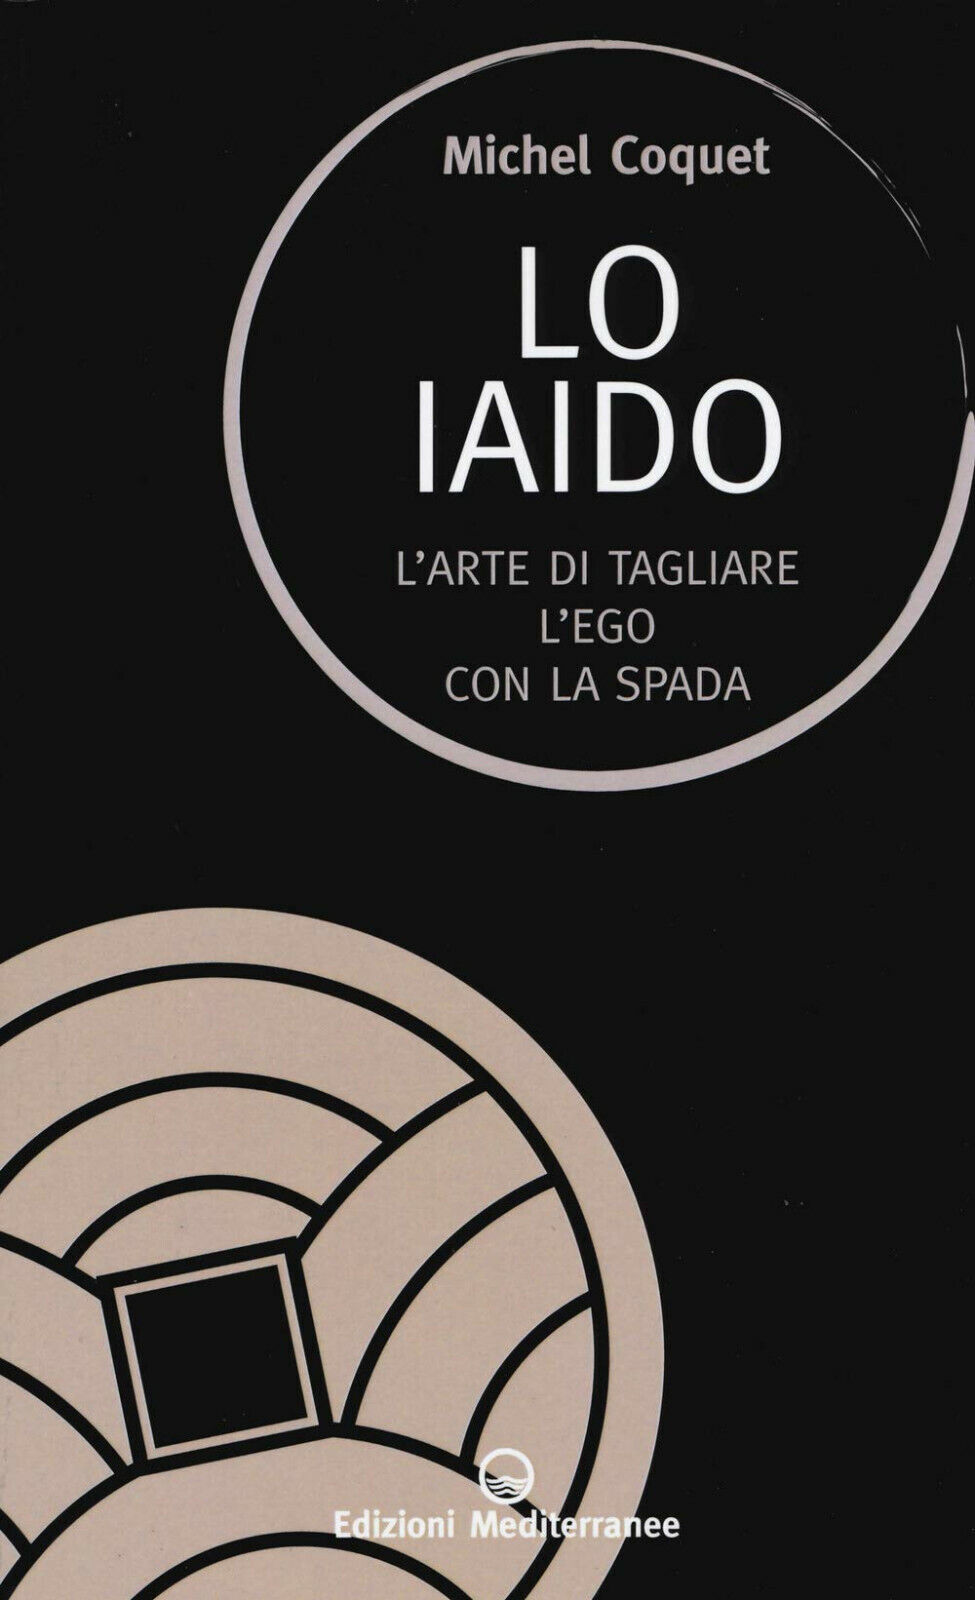 Lo iaido - Michel Coquet - Edizioni Mediterranee, 2019